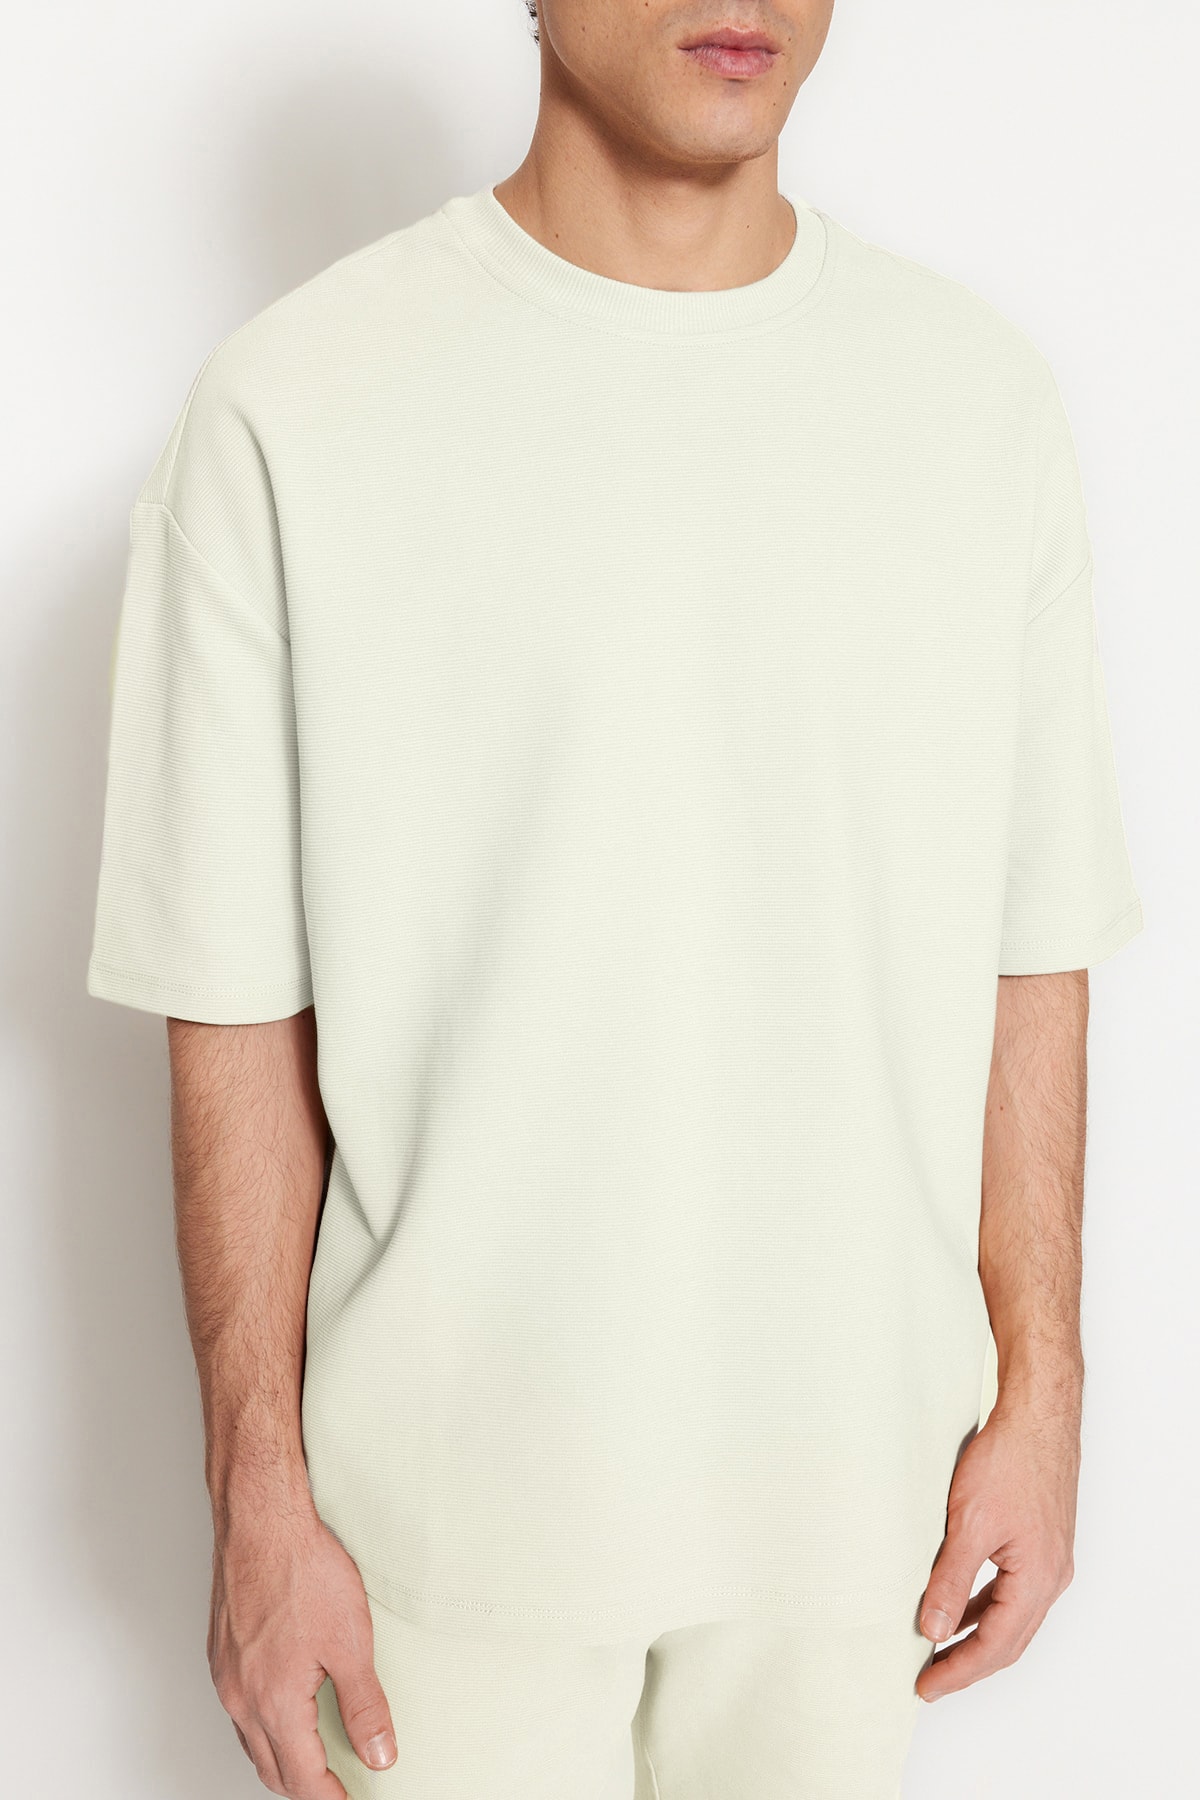 Trendyol Collection Ecrufarbenes in aus 100 Premium-Baumwolle mit Herren-T-Shirt limitierter Auflage Übergröße/Weitschnitt Struktur Trendyol % - in